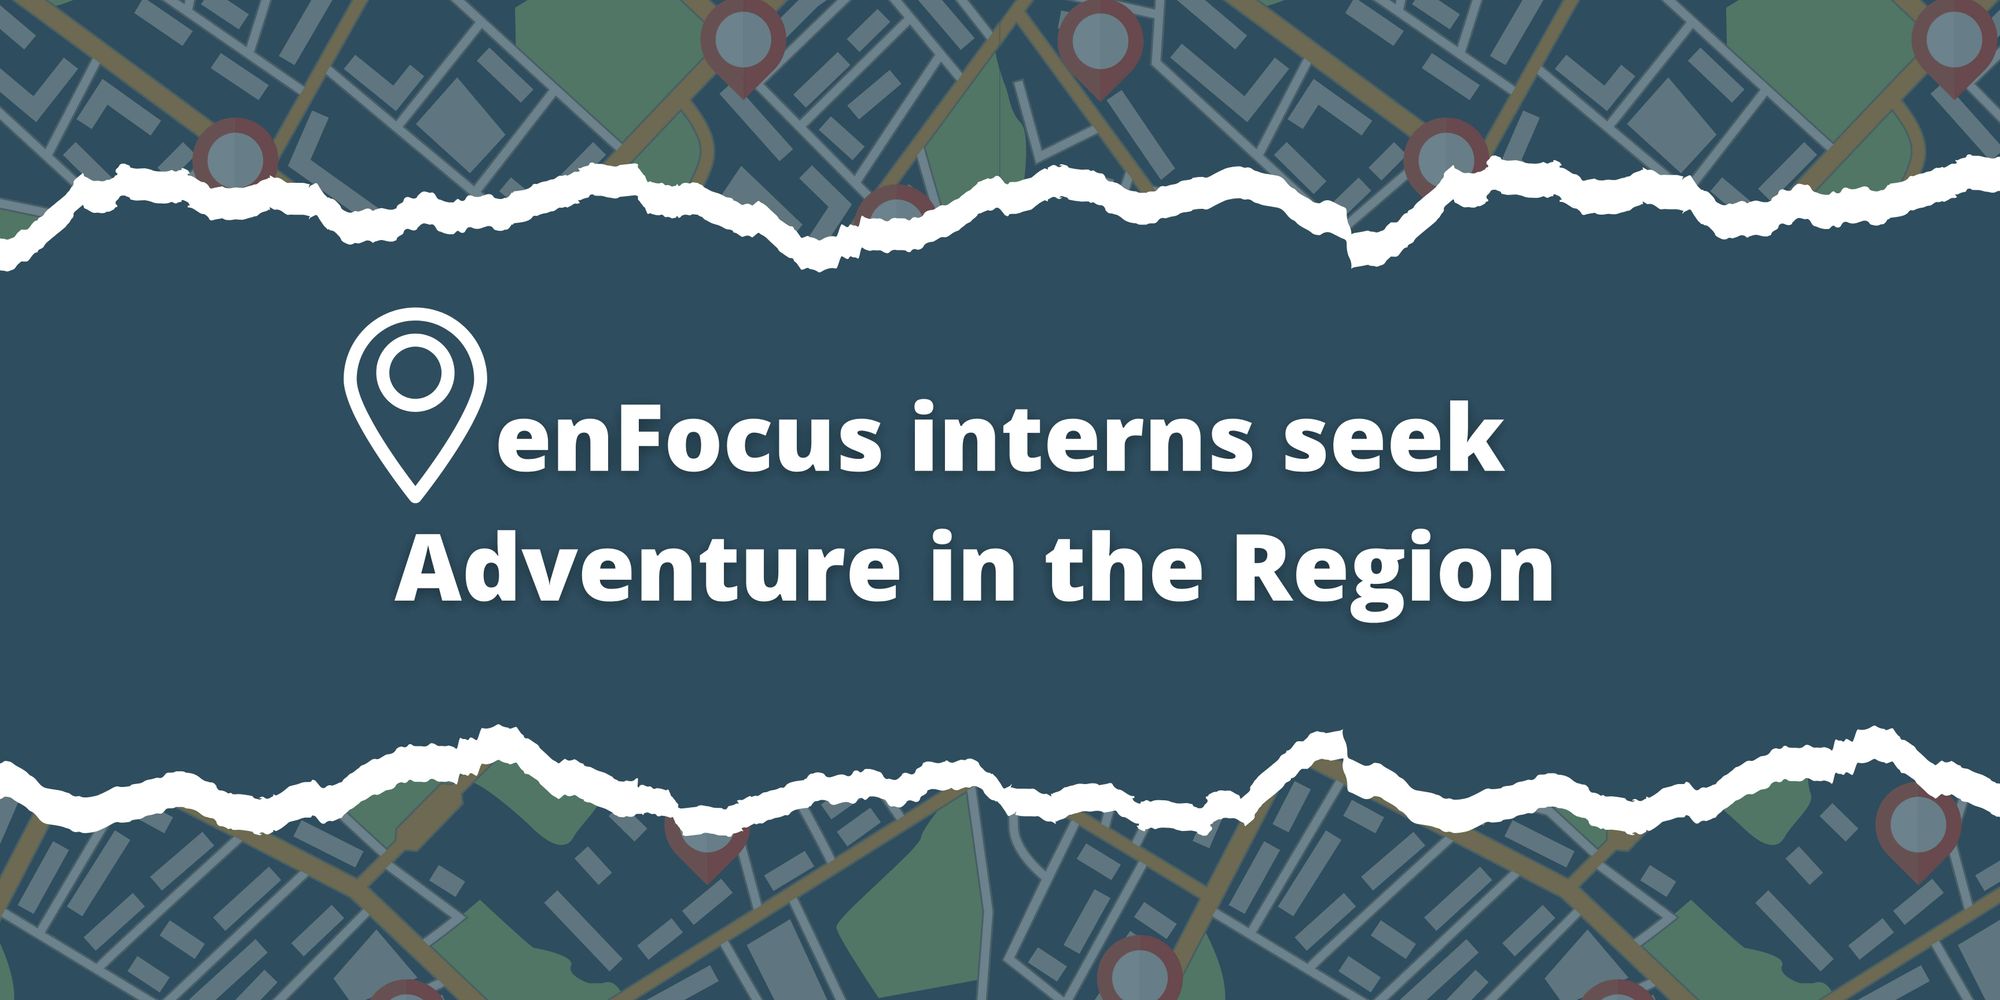 enFocus interns seek Adventure in the Region